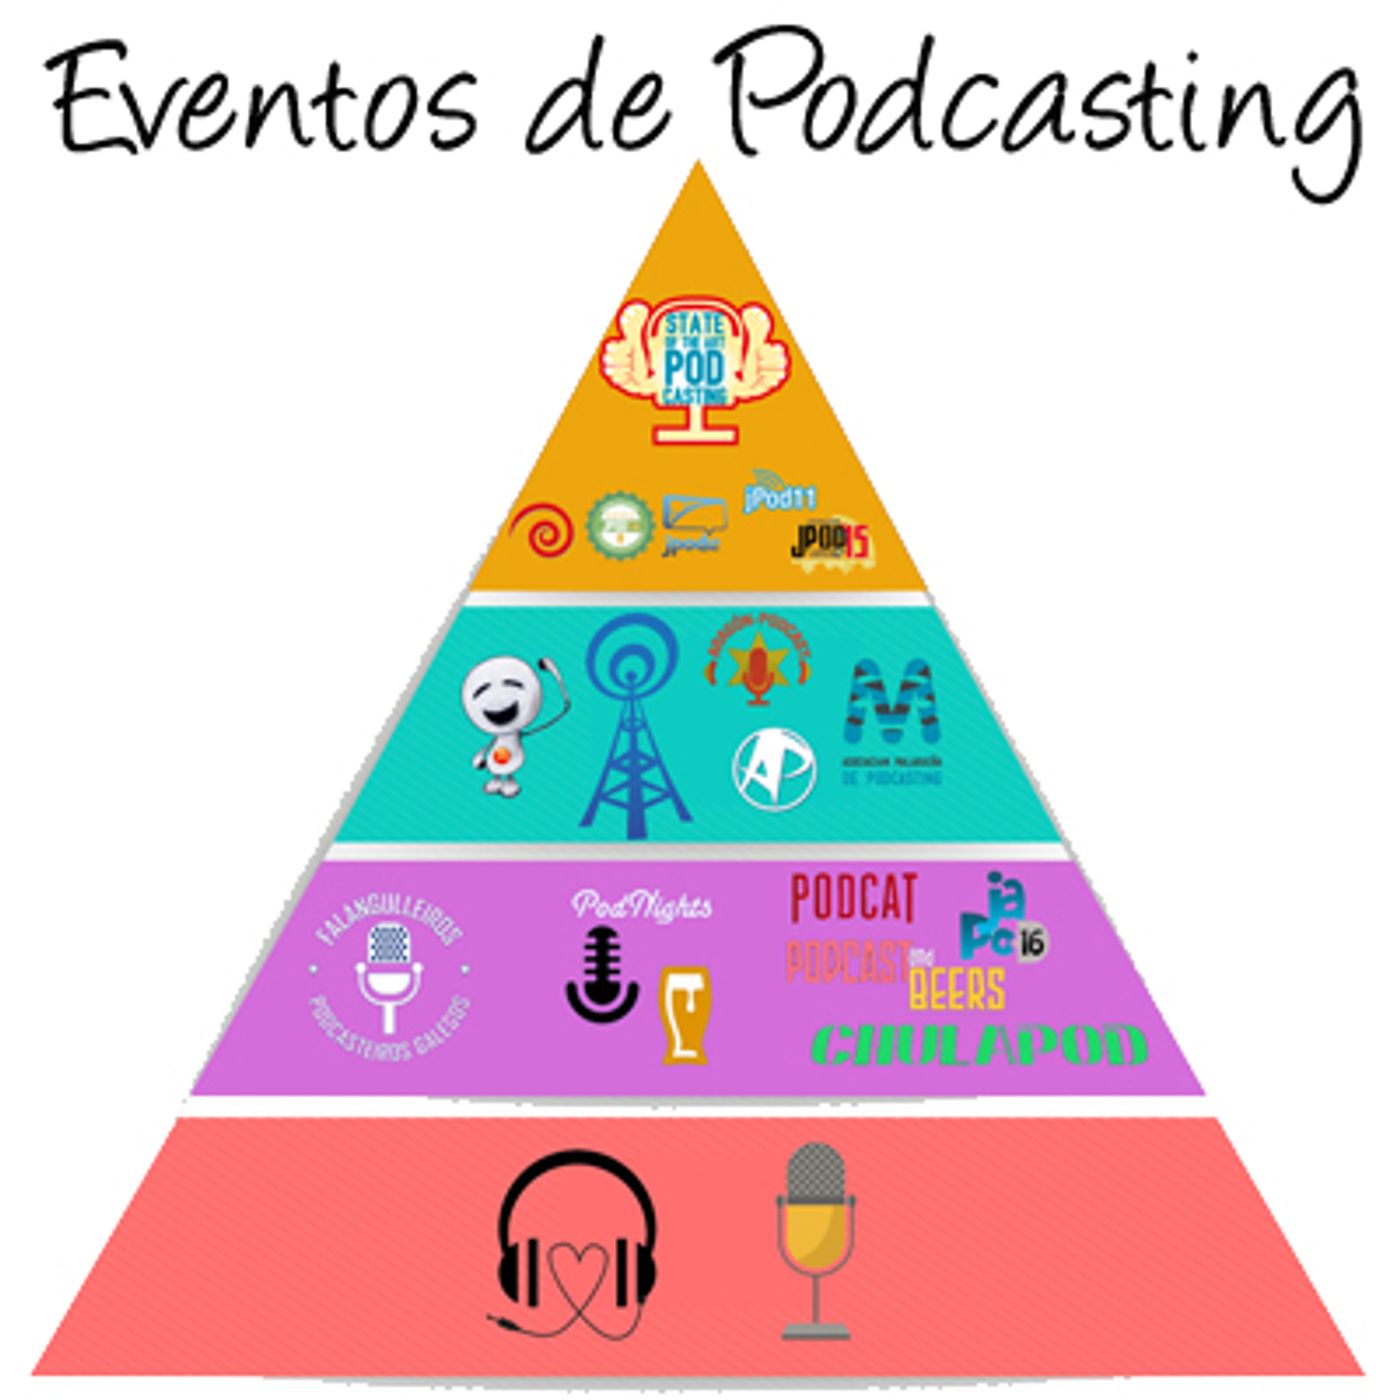 Eventos de podcasting